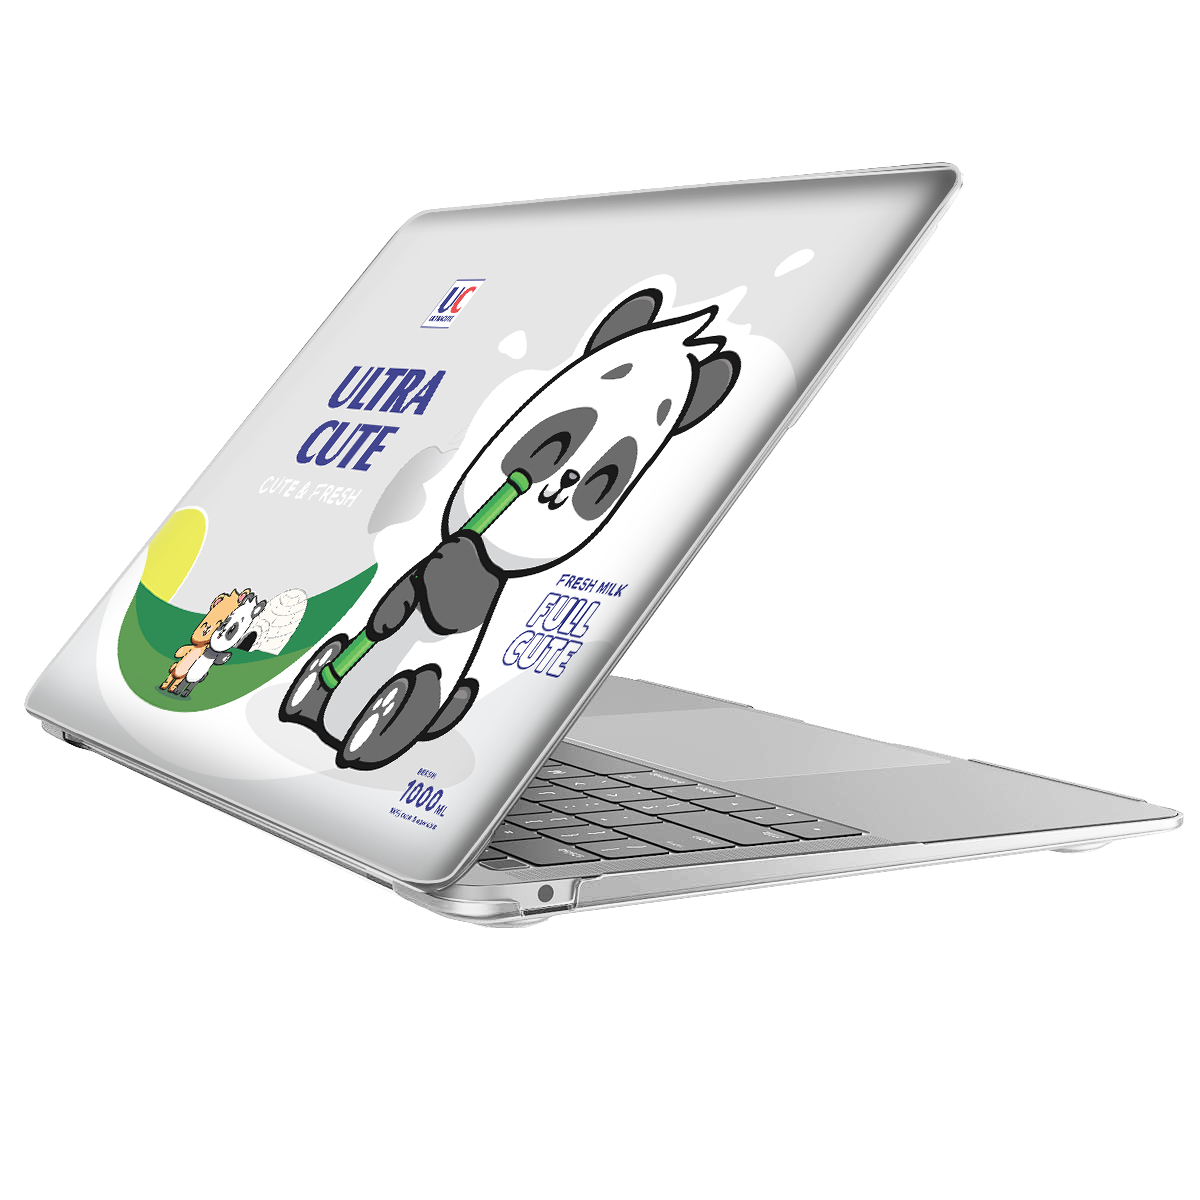 MacBook Snap Case - Ultra Cute